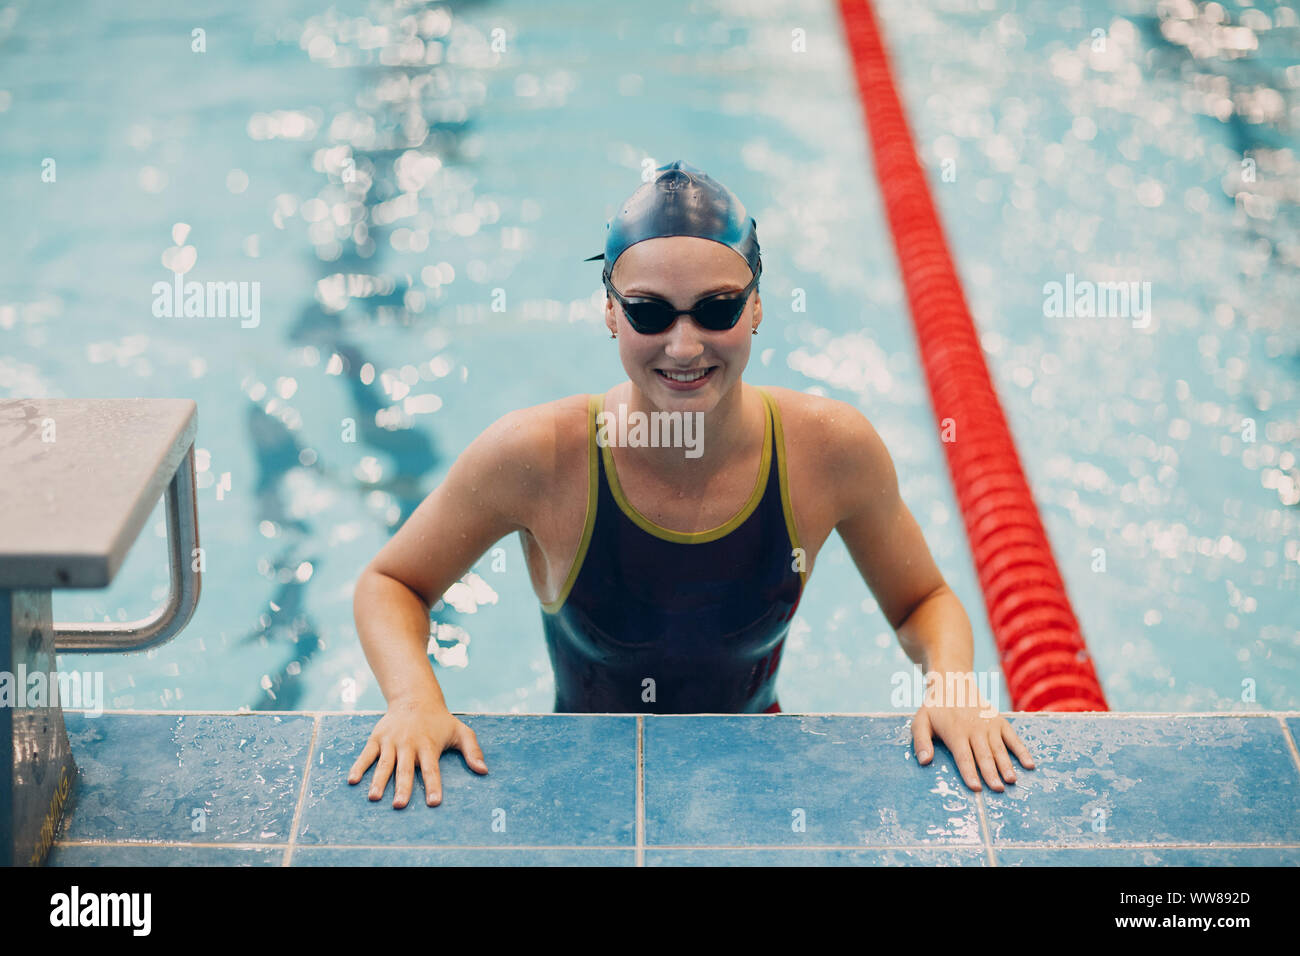 Junge Frau Schwimmer portrait Freude freut sich über den Sieg im Schwimmen  Wettkämpfe im Schwimmbad Stockfotografie - Alamy